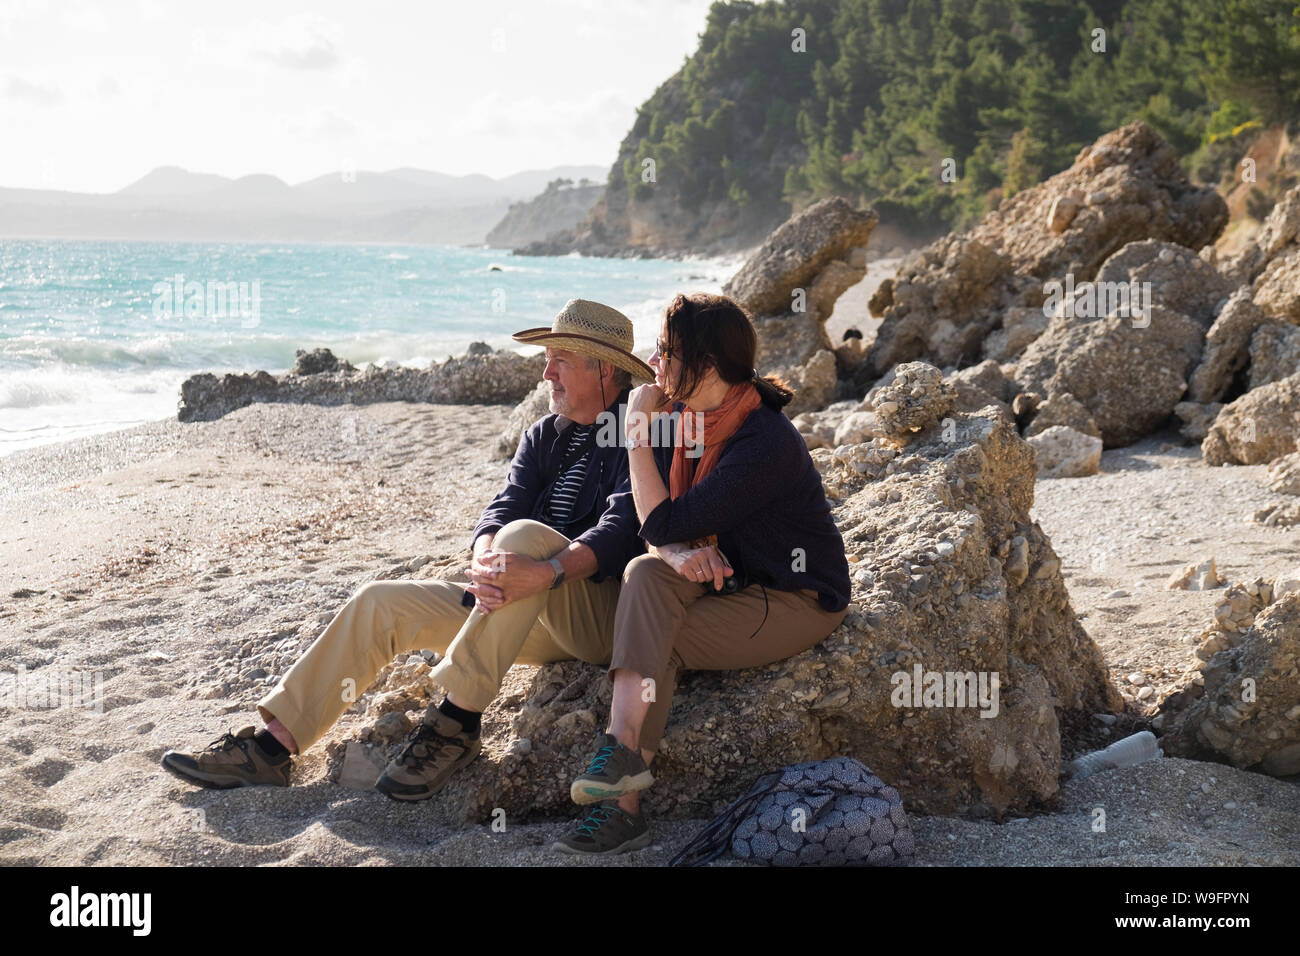 Un couple dans la fin des années 60 début des années 70, s'asseoir et admirer la vue sur la plage isolée et vide Paradissi à Kefalonia, Grèce. Banque D'Images